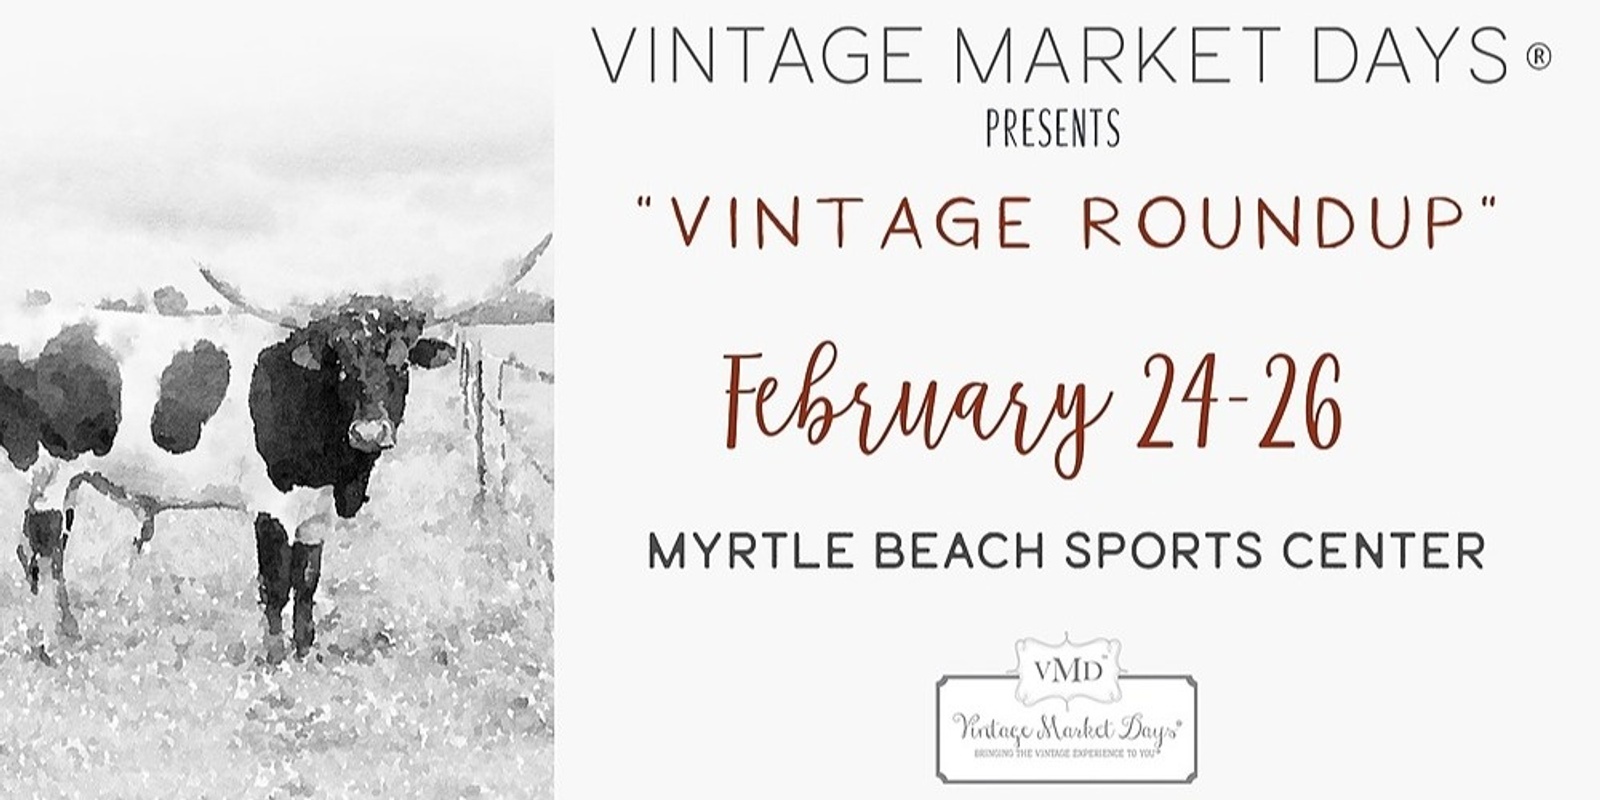 Banner image for Vintage Market Days of Coastal Carolina Presents "Vintage Roundup"